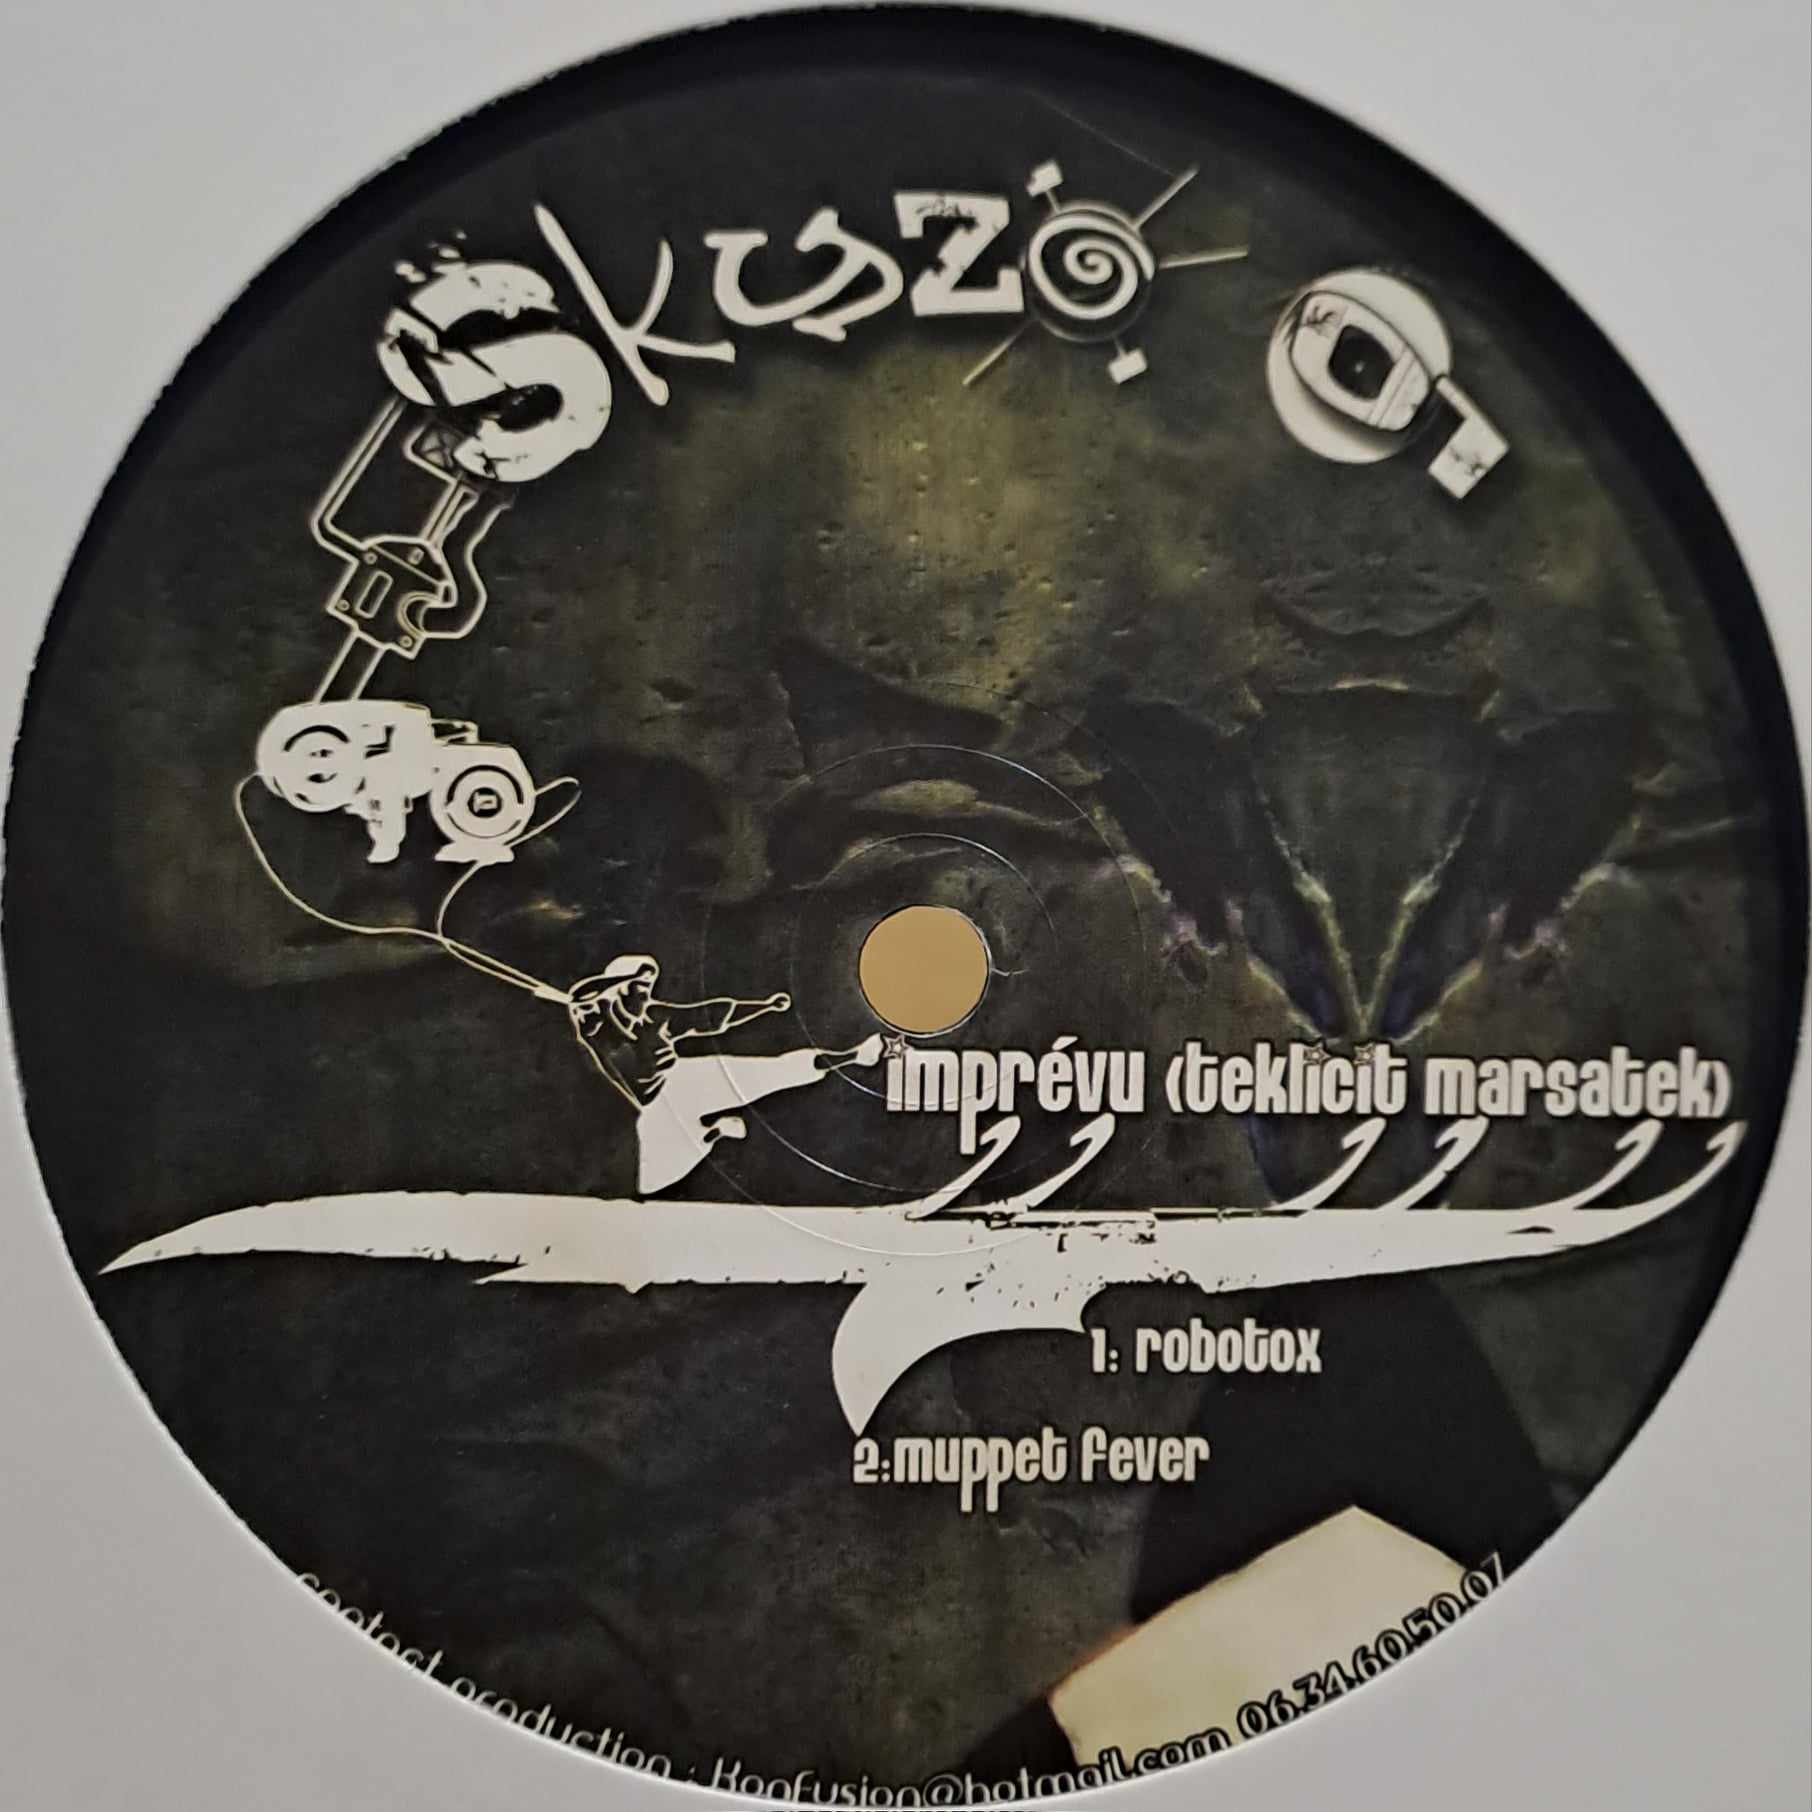 Skyzo 01 - vinyle freetekno